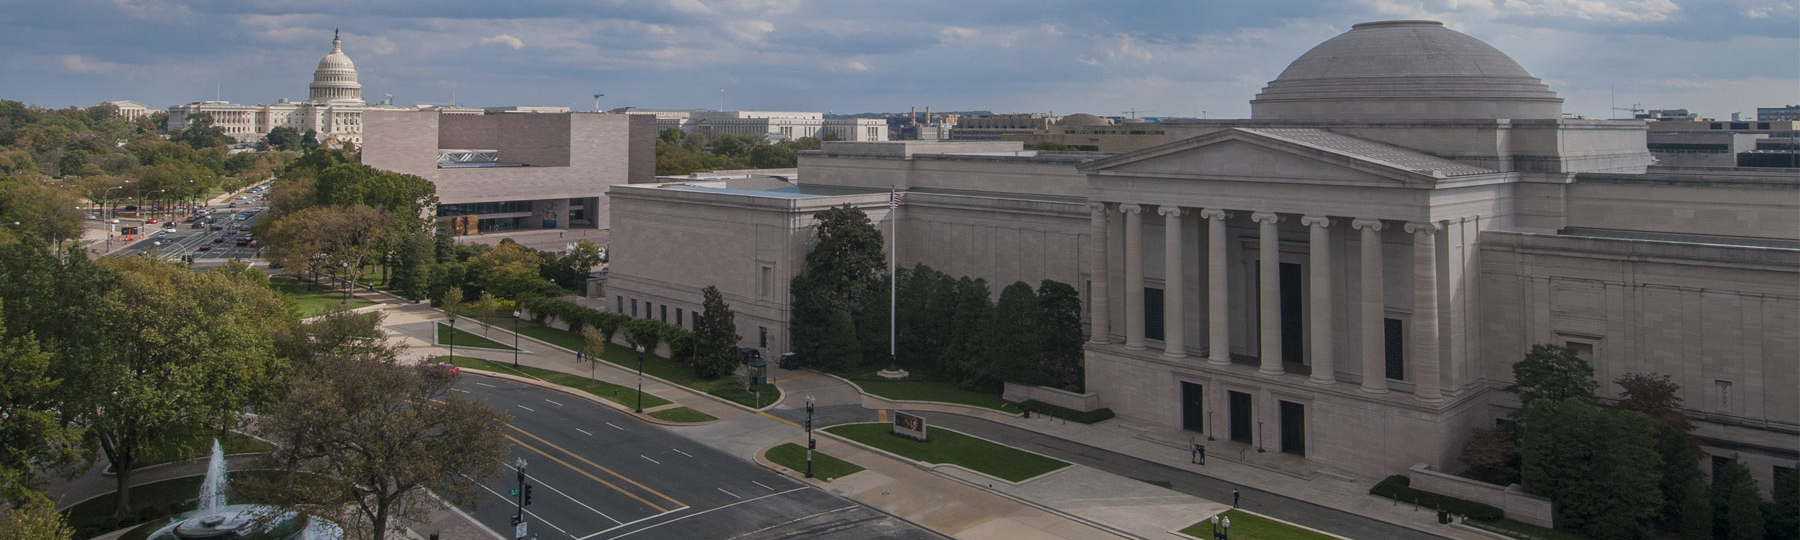 National Gallery of Art vue aérienne des bâtiments est et ouest